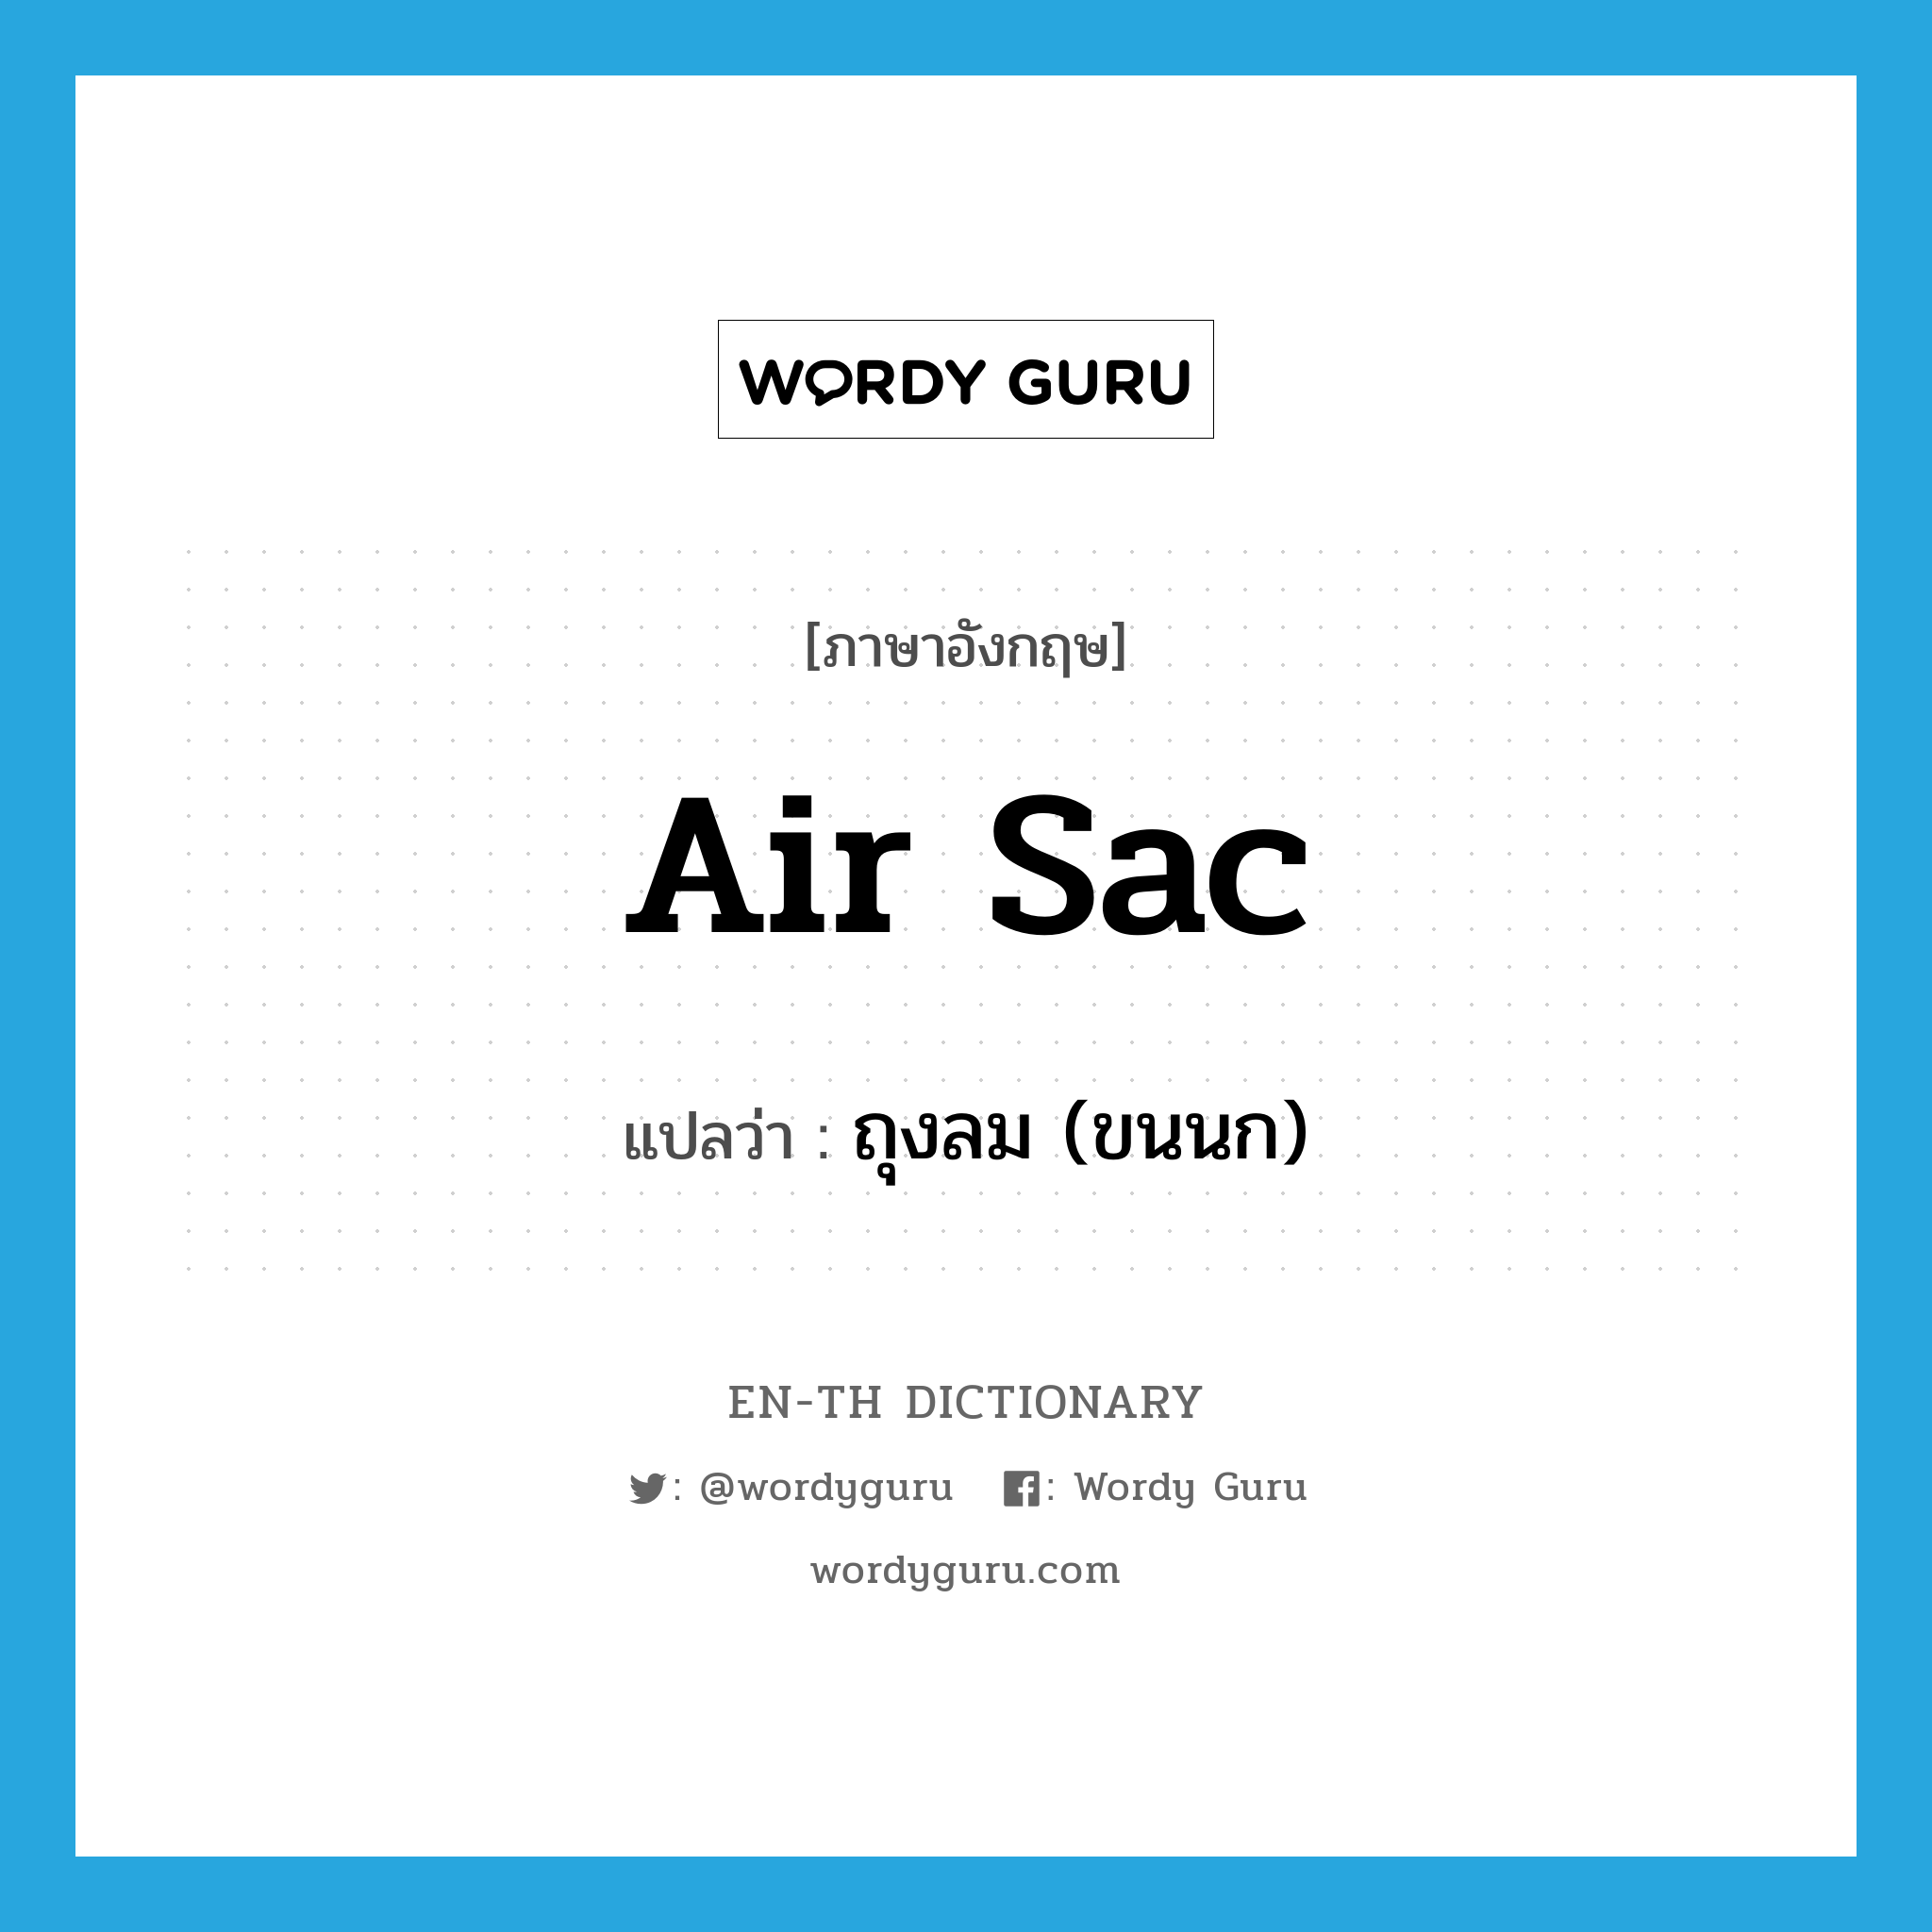 air sac แปลว่า?, คำศัพท์ภาษาอังกฤษ air sac แปลว่า ถุงลม (ขนนก) ประเภท N หมวด N